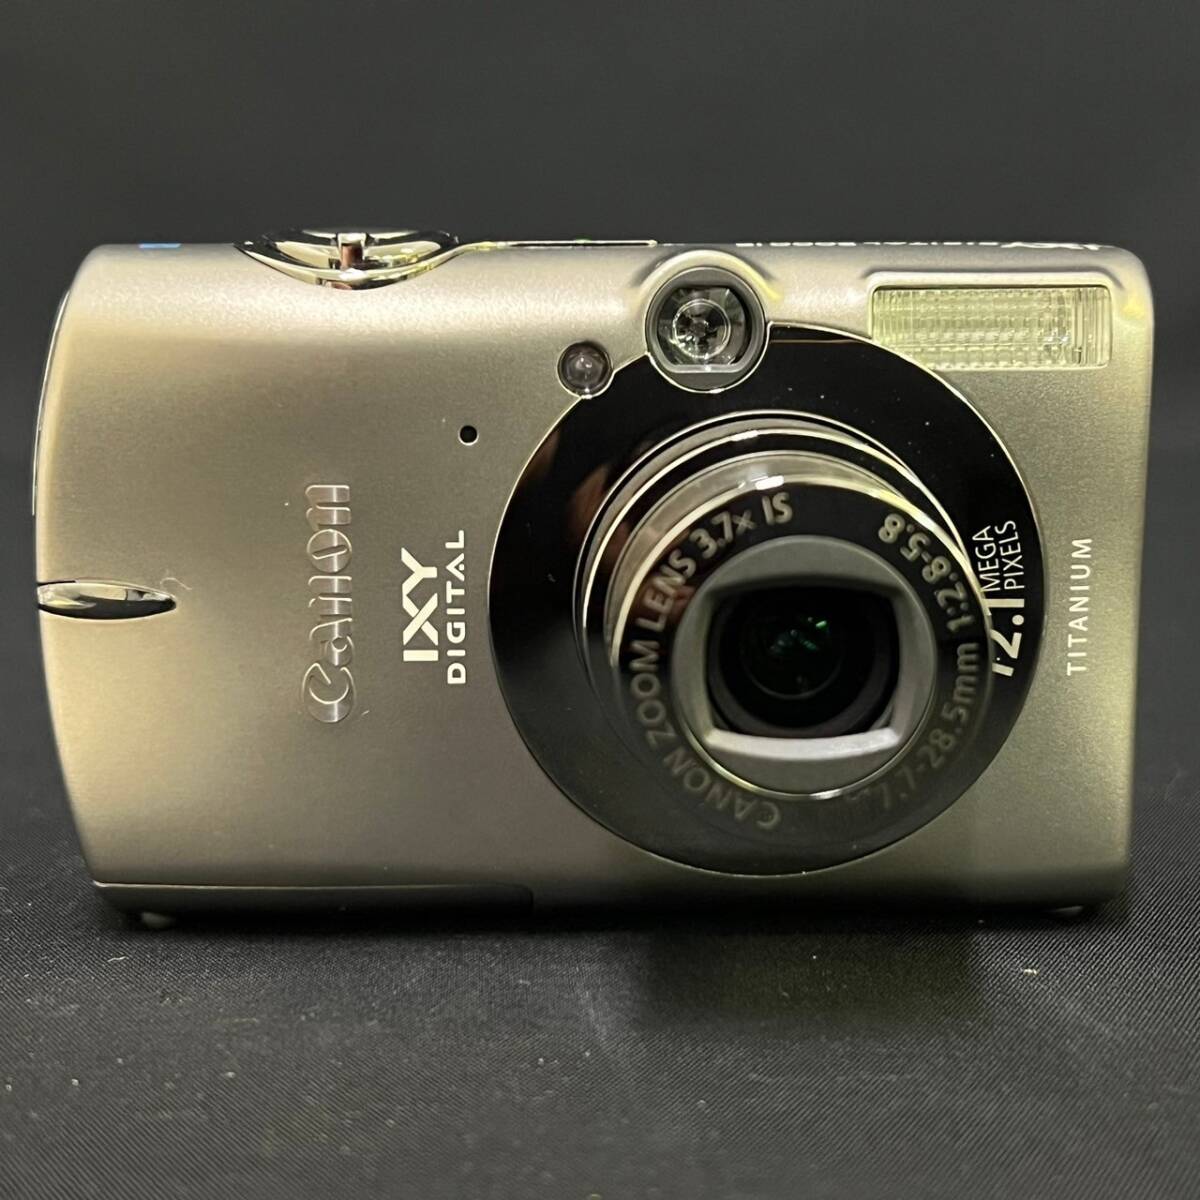 BDg229I 60 箱付き Canon IXY Digital 2000IS PC1248 デジタルカメラ 純正 専用ケース シルバー SDカード2GB 充電器 説明書 イクシー_画像2